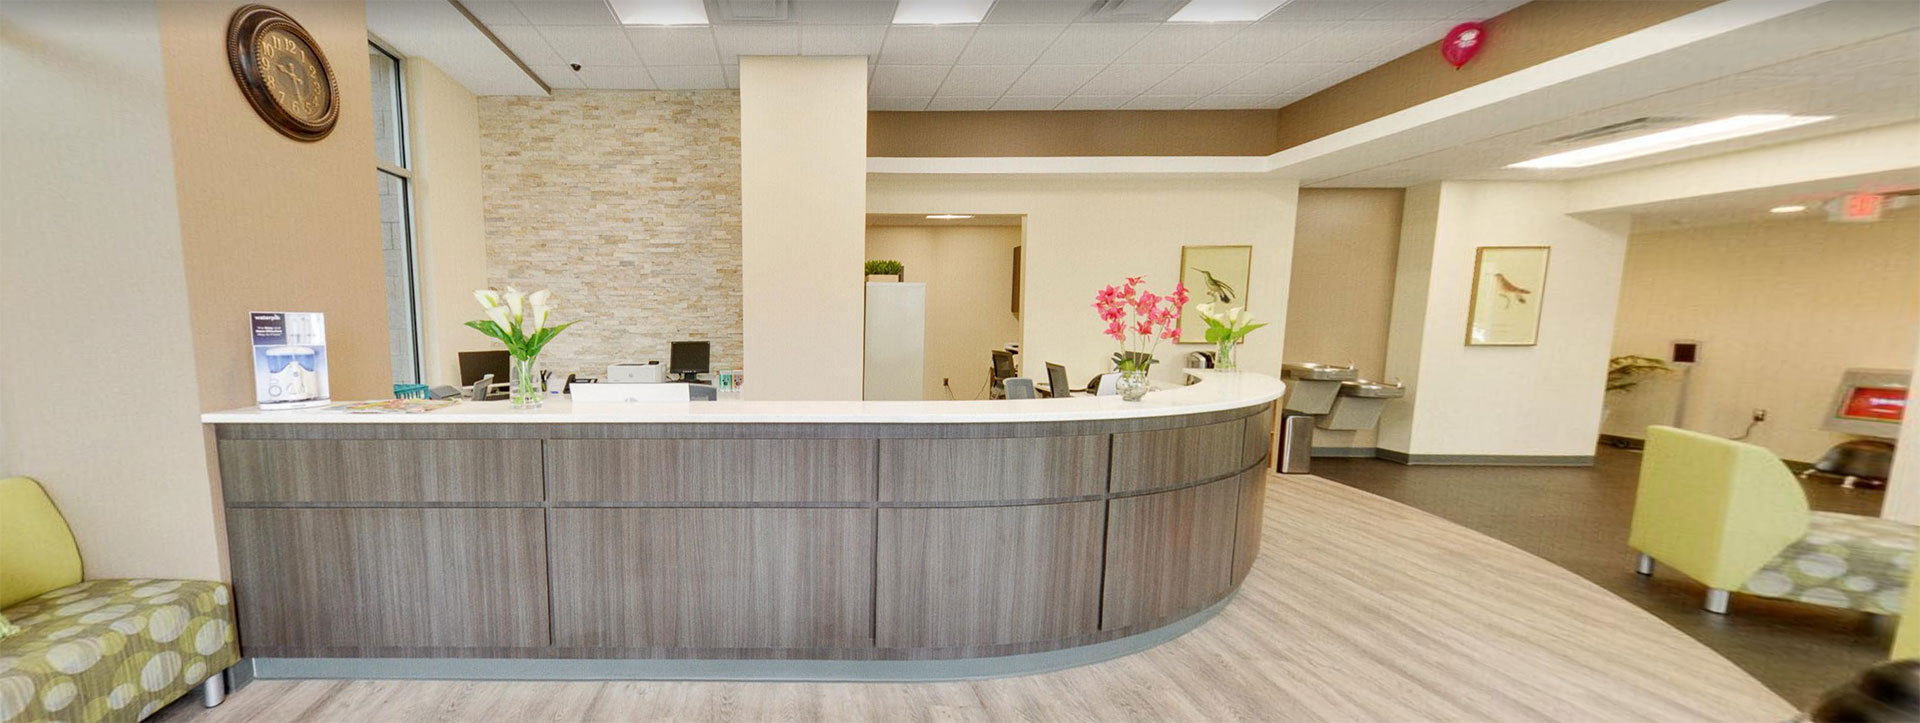 Tallahassee Pediatric Orthodontist Office